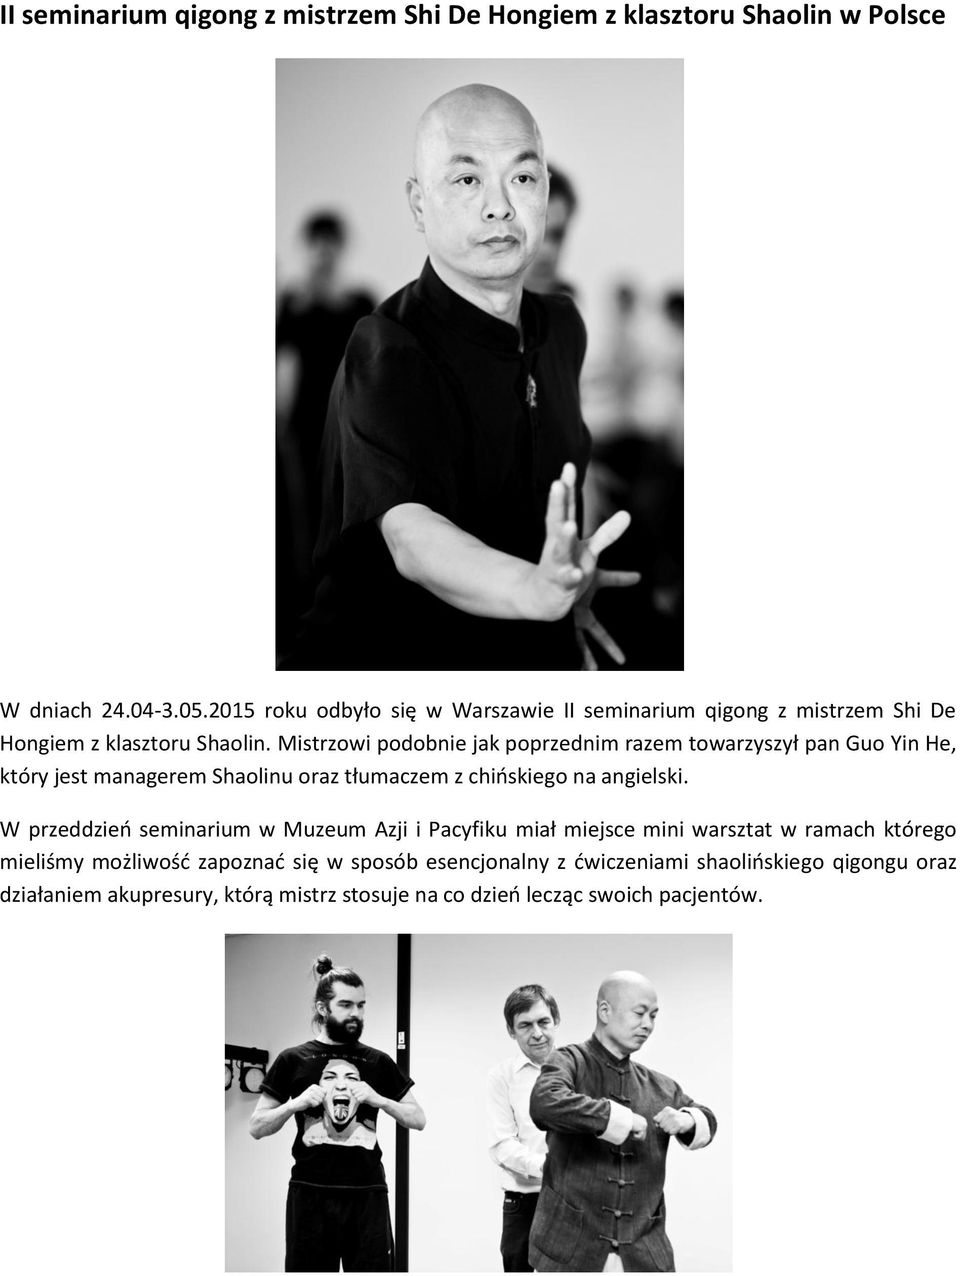 Mistrzowi podobnie jak poprzednim razem towarzyszył pan Guo Yin He, który jest managerem Shaolinu oraz tłumaczem z chińskiego na angielski.